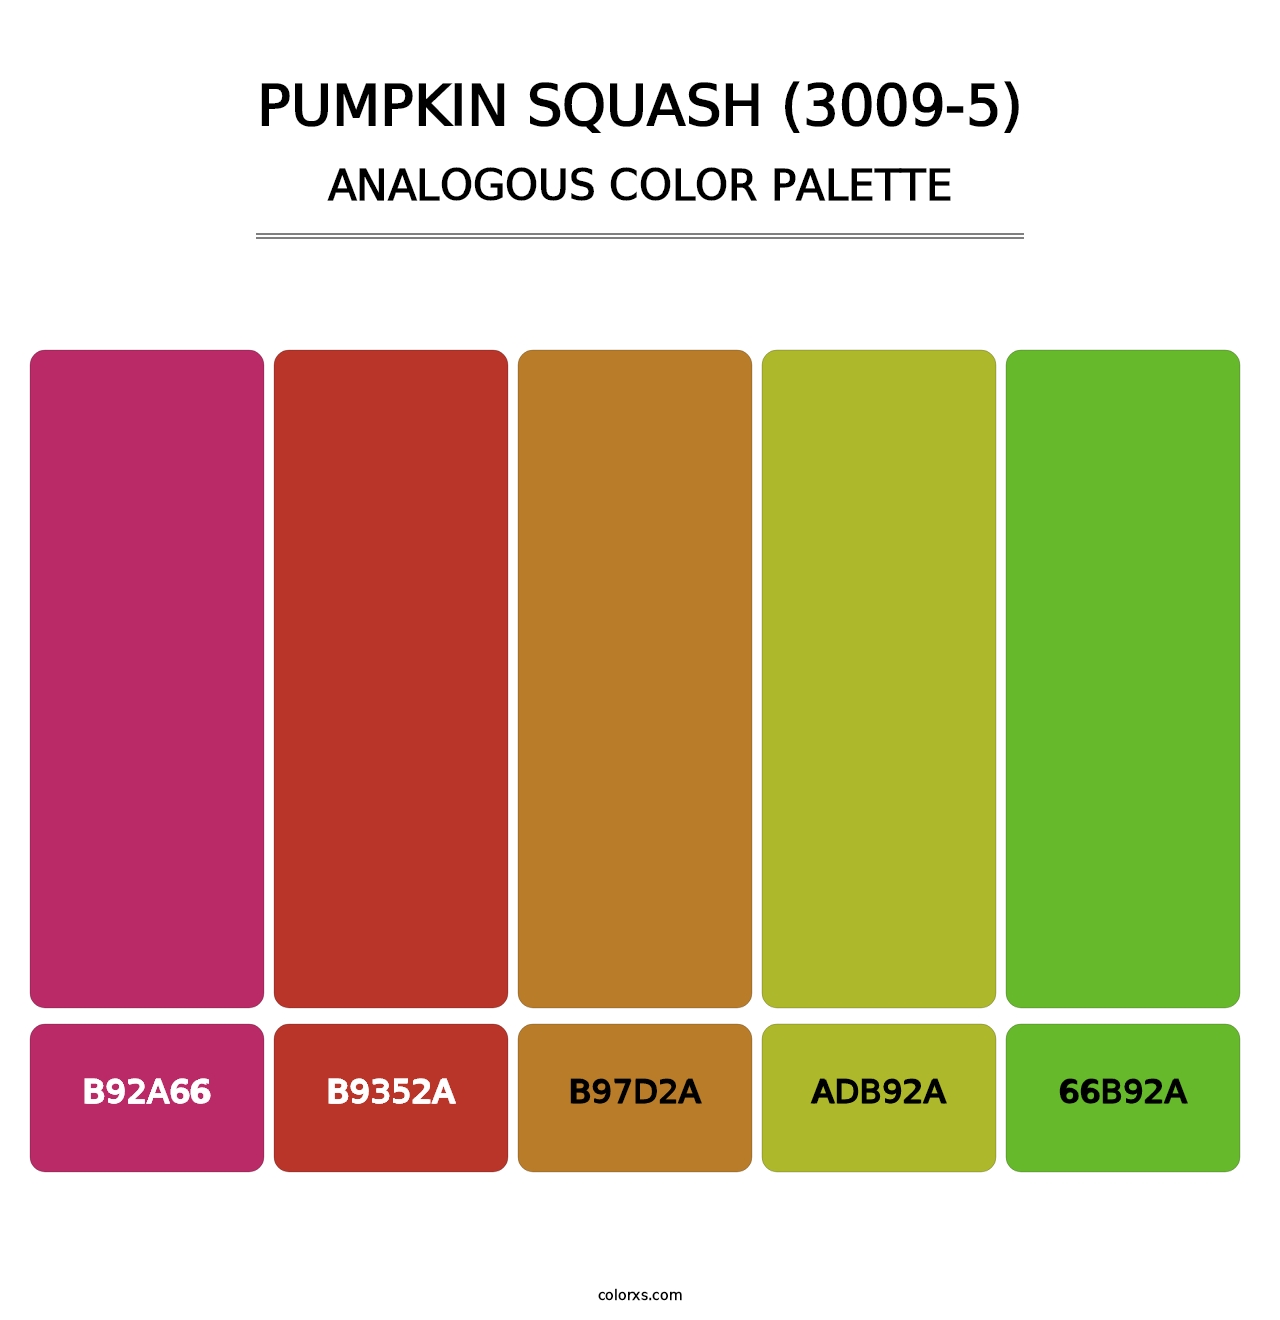 Pumpkin Squash (3009-5) - Analogous Color Palette